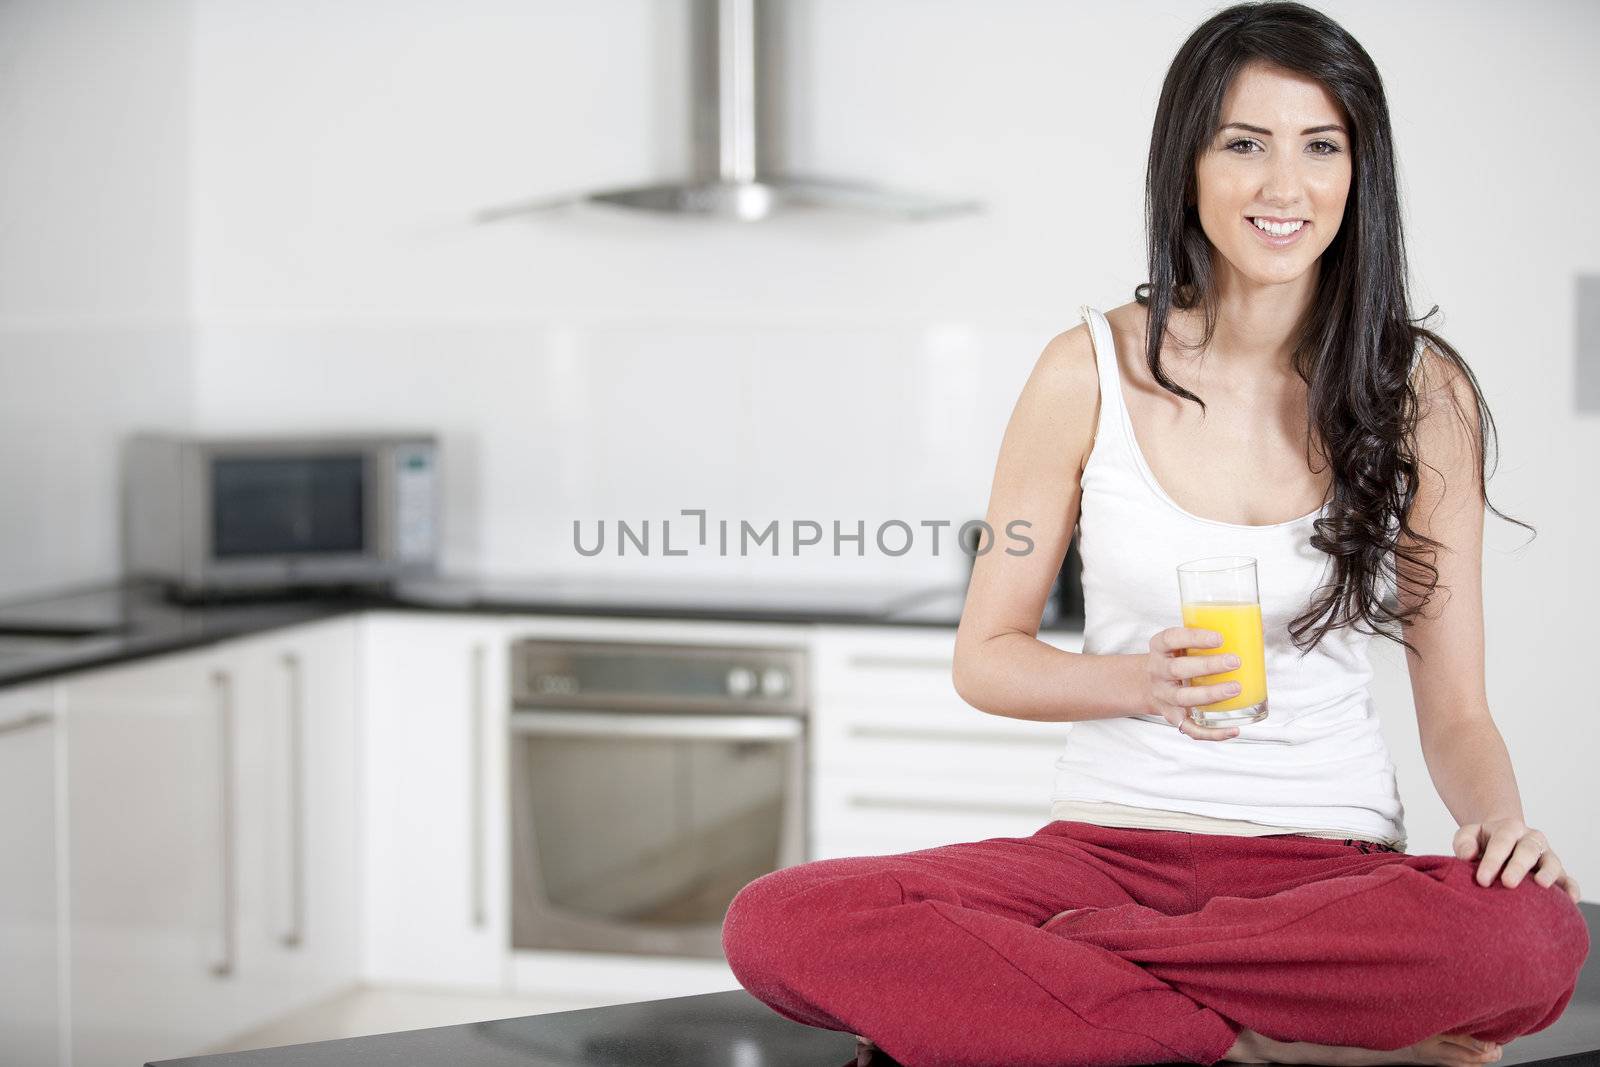 Young woman enjoying a glass of juice by studiofi